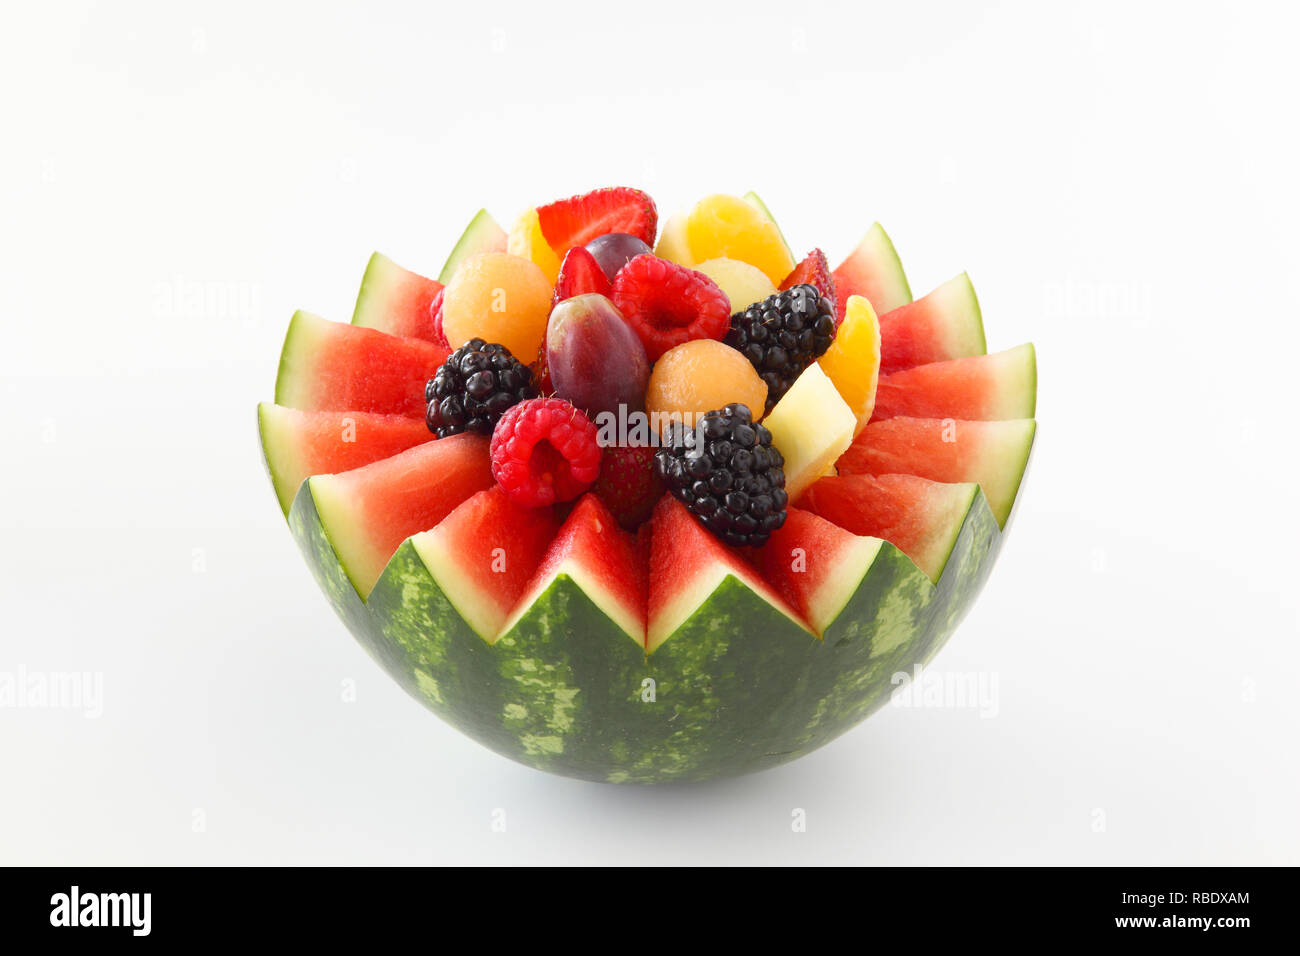 Fancy cut Wassermelone auf weißem Hintergrund mit sortierten Obst wie Beeren, Trauben, Ananas, Orangen Stockfoto